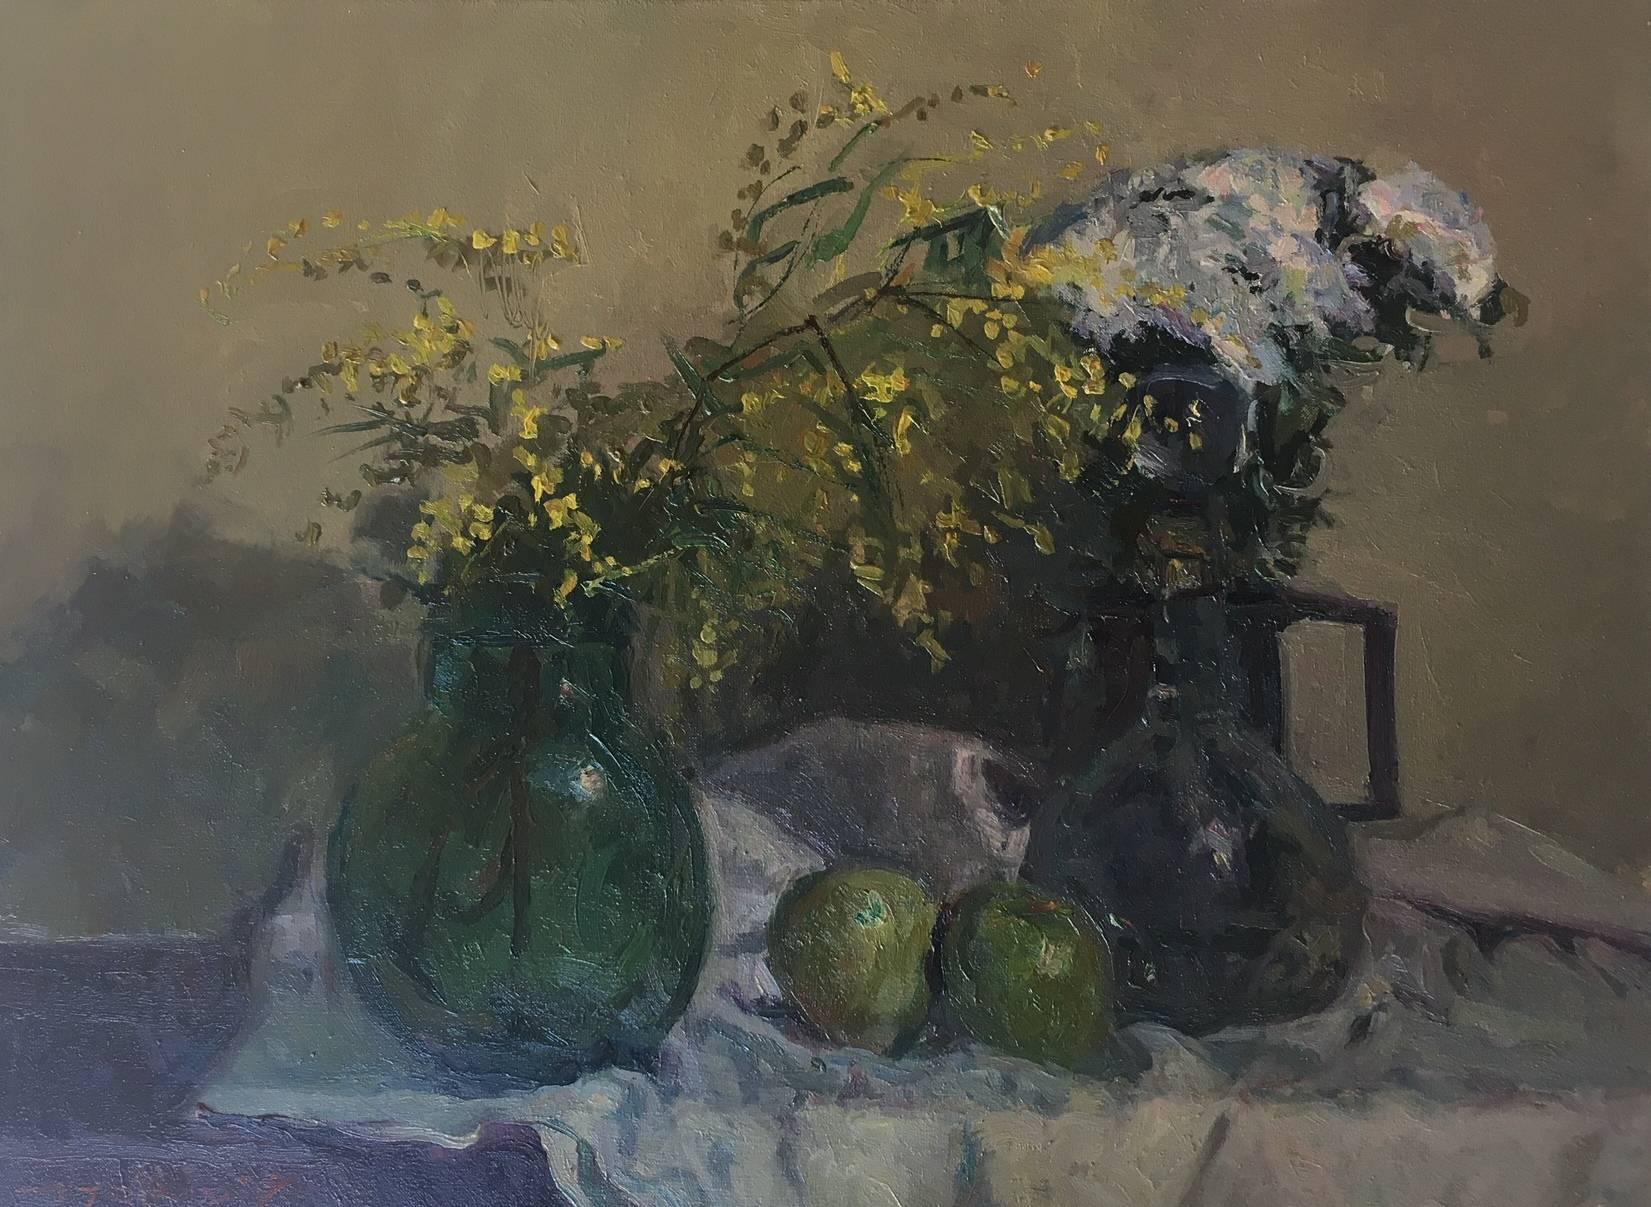 stillleben. mimosen und früchte. original impressionistisches ölgemälde auf leinwand.. gerahmt
Sola PUIG, Joan    (Barcelona 1950 )

Joan SOLÁ malt auf eine natürliche Art und Weise, die die alten Meister widerspiegelt, indem er die Farben, die